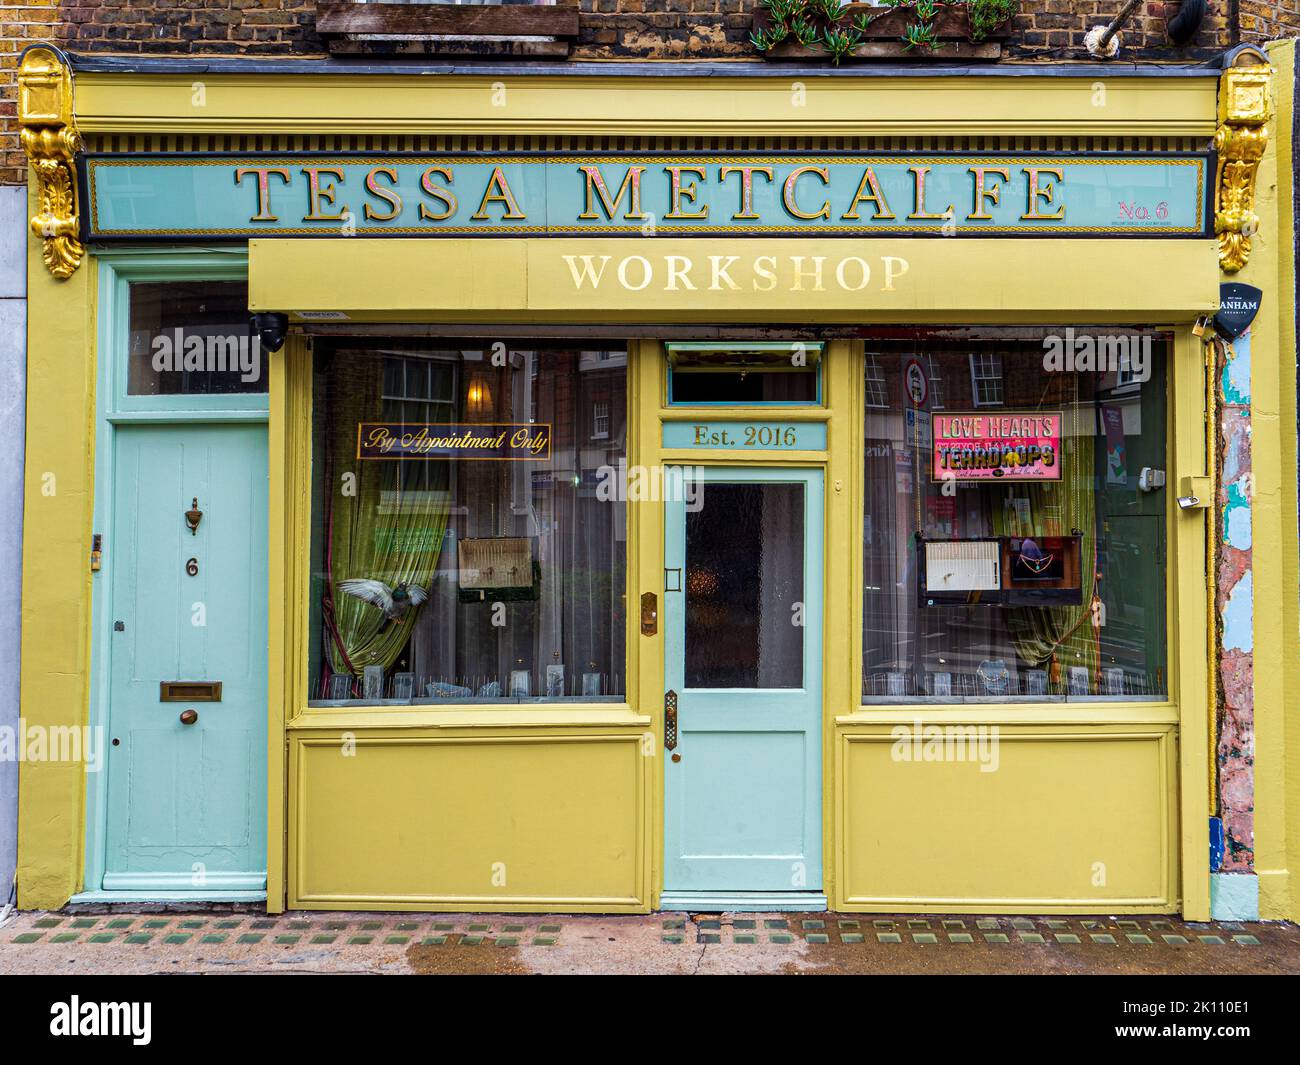 Tessa Metcalfe Schmuckwerkstatt und -Laden in der 6-Straße in London. Gegründet 2016. Stockfoto